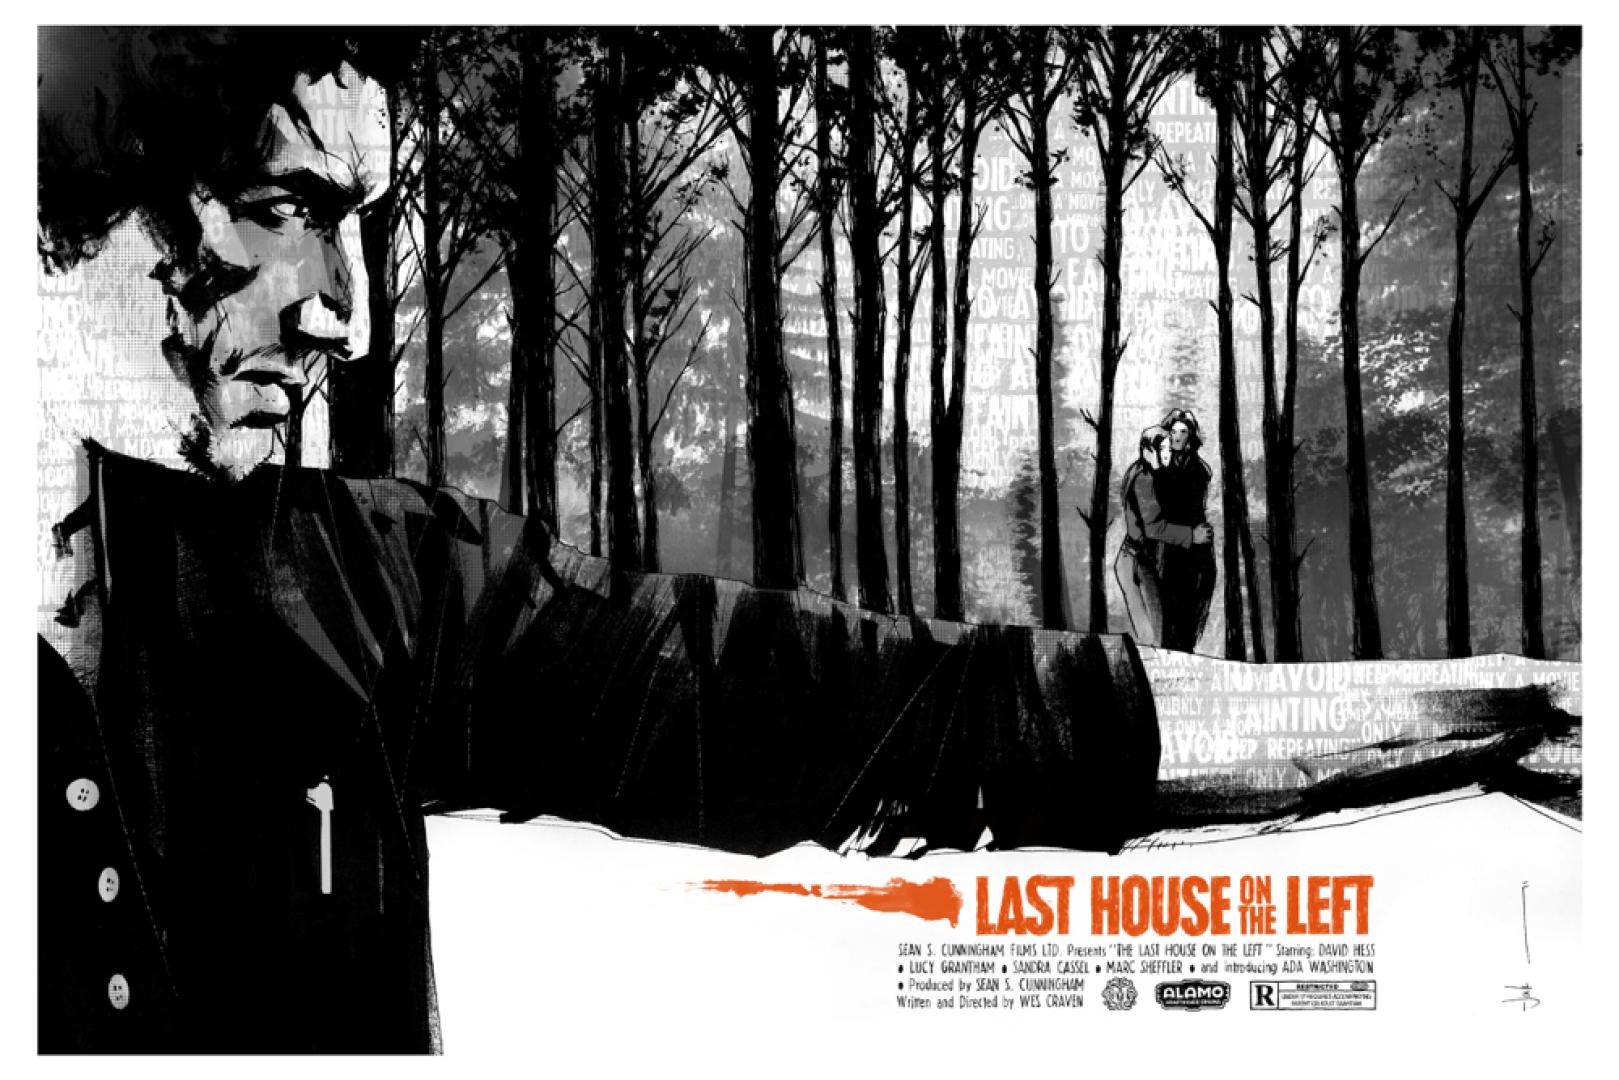 20 érdekesség Az utolsó ház balra (1972) című filmről